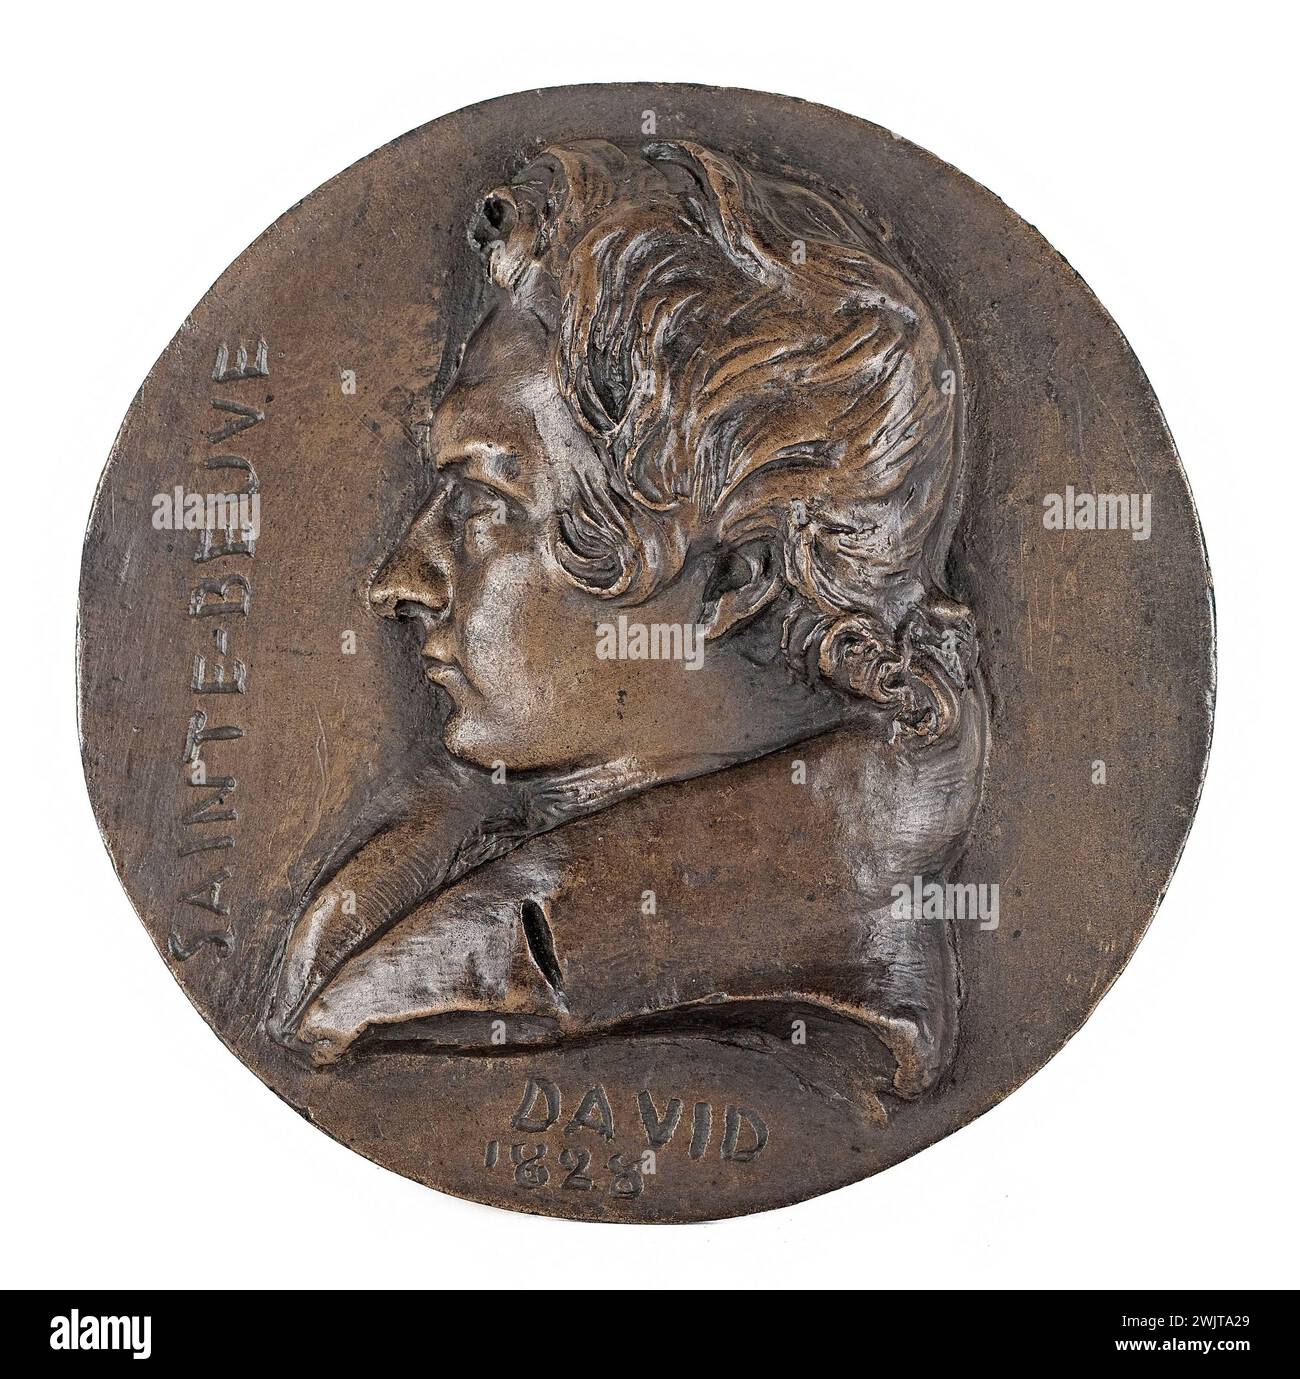 David d'Angers (1788-1856). Portrait of Charles-Augustin Sainte-Beuve (1788-1869), poet and critic. Bronze. Sand cast. 1828. Paris, Carnavalet museum. 60830-8 Bronze, criticism, medal, french poet, profile, portrait Stock Photo